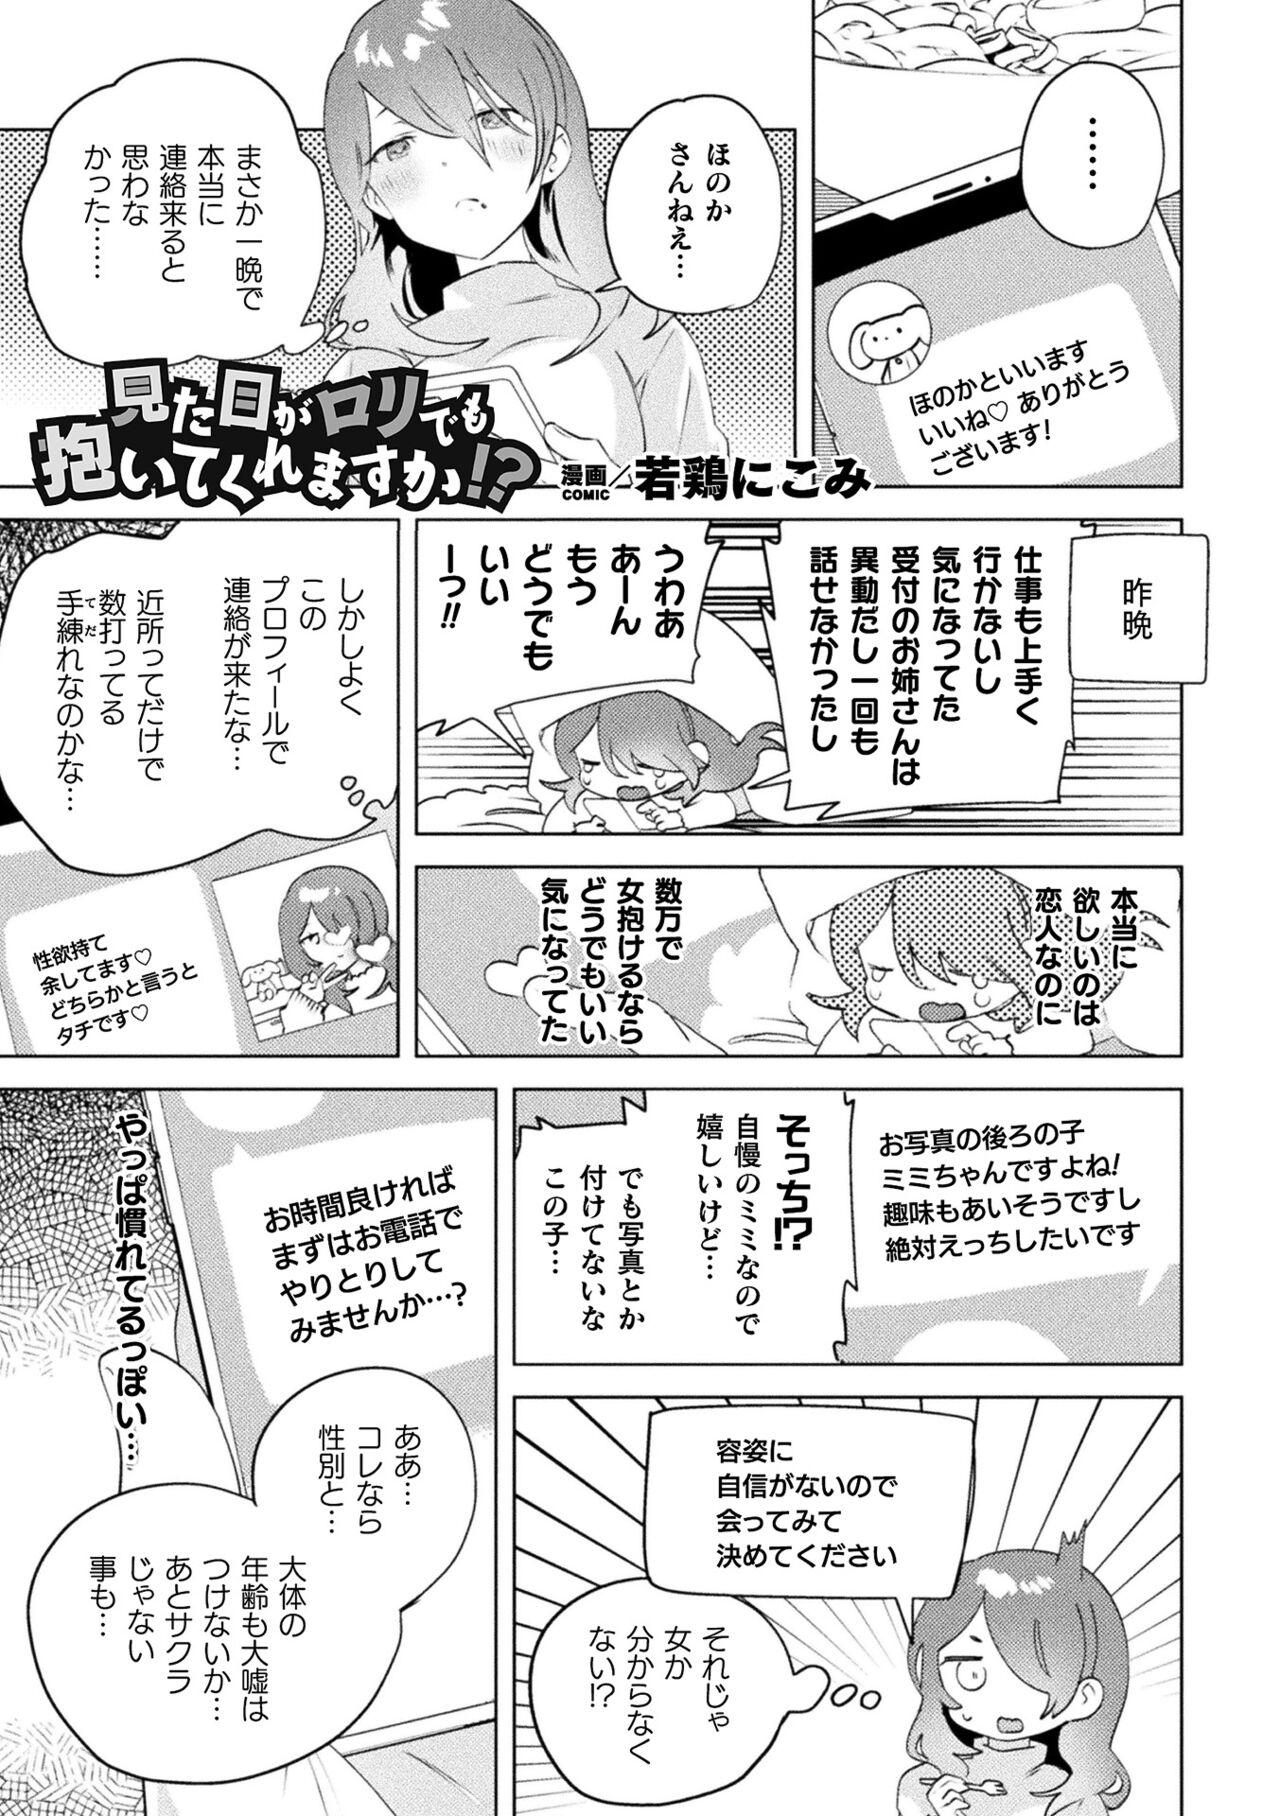 Super 2D Comic Magazine Mamakatsu Yuri Ecchi Vol. 3 Dyke - Picture 3